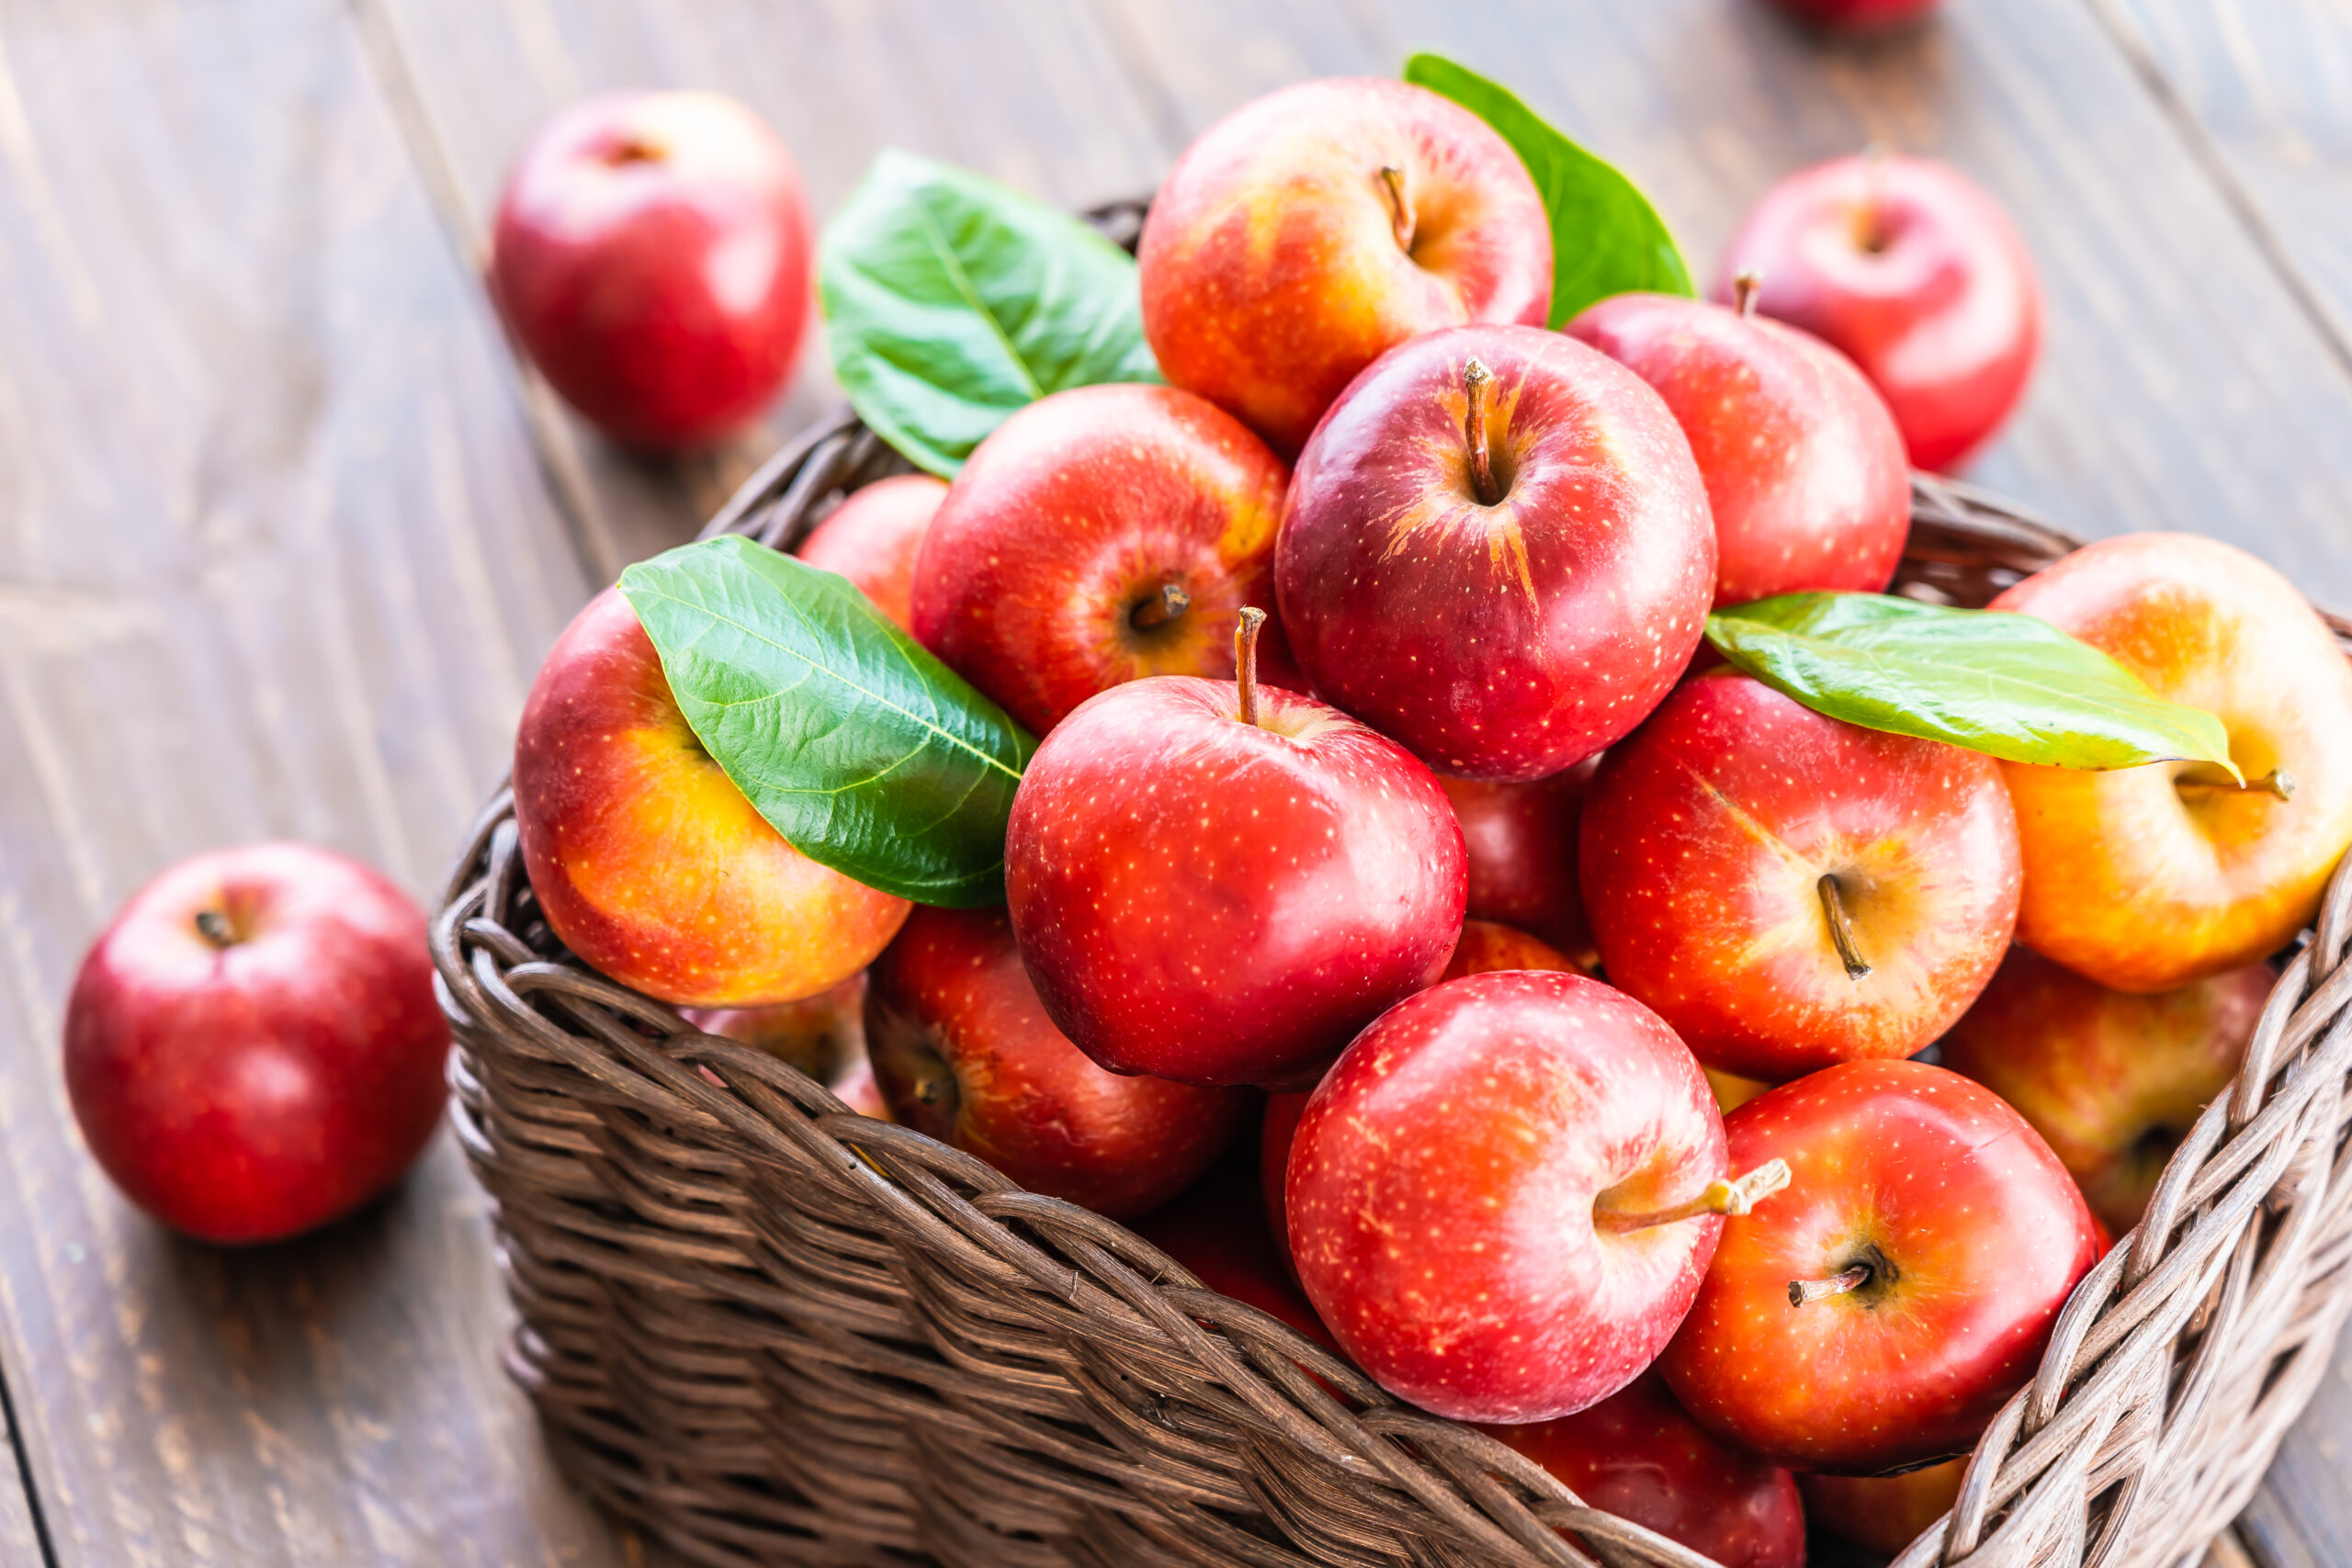 Na obrazku widzimy wiklinowy koszyk, wypełniony czerwonymi jabłkami, ustawiony na blacie. Jabłka wyglądają soczyście i zachęcająco, co może sugerować ich świeżość i smak